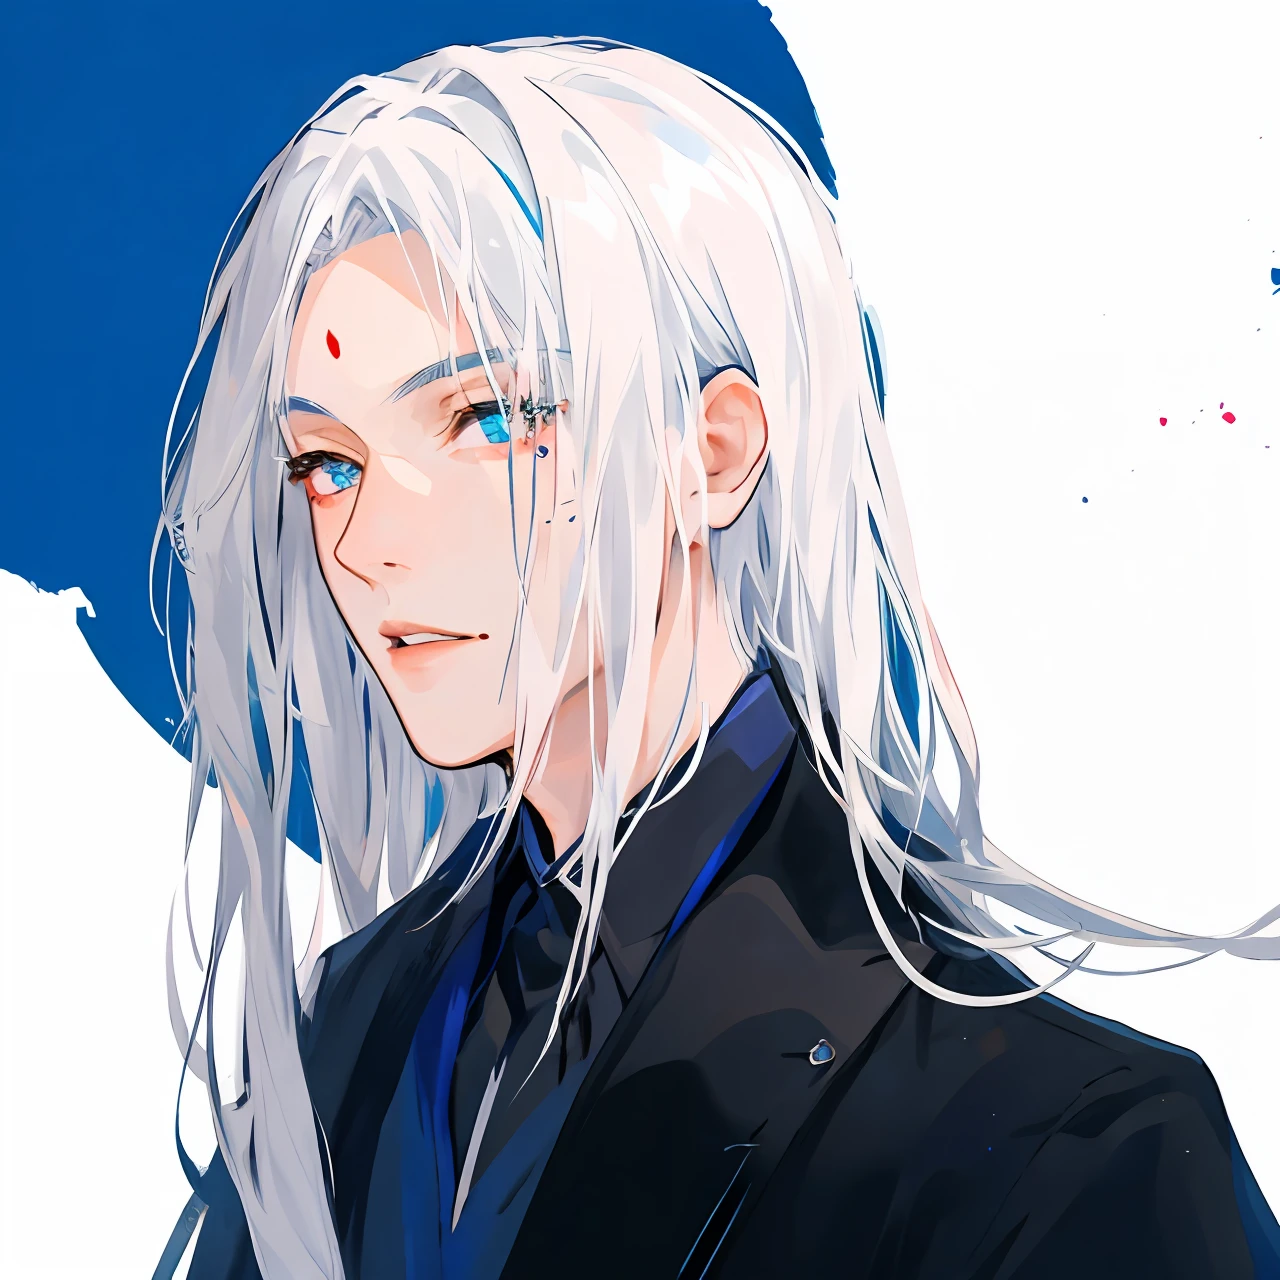 흰 머리를 가진 남자의 애니메이션 이미지, 길고 흰 머리카락, 청흑색 가운을 입고，이마에 붉은 점이 있습니다，닫힌 입술，파란색-검정색 배경